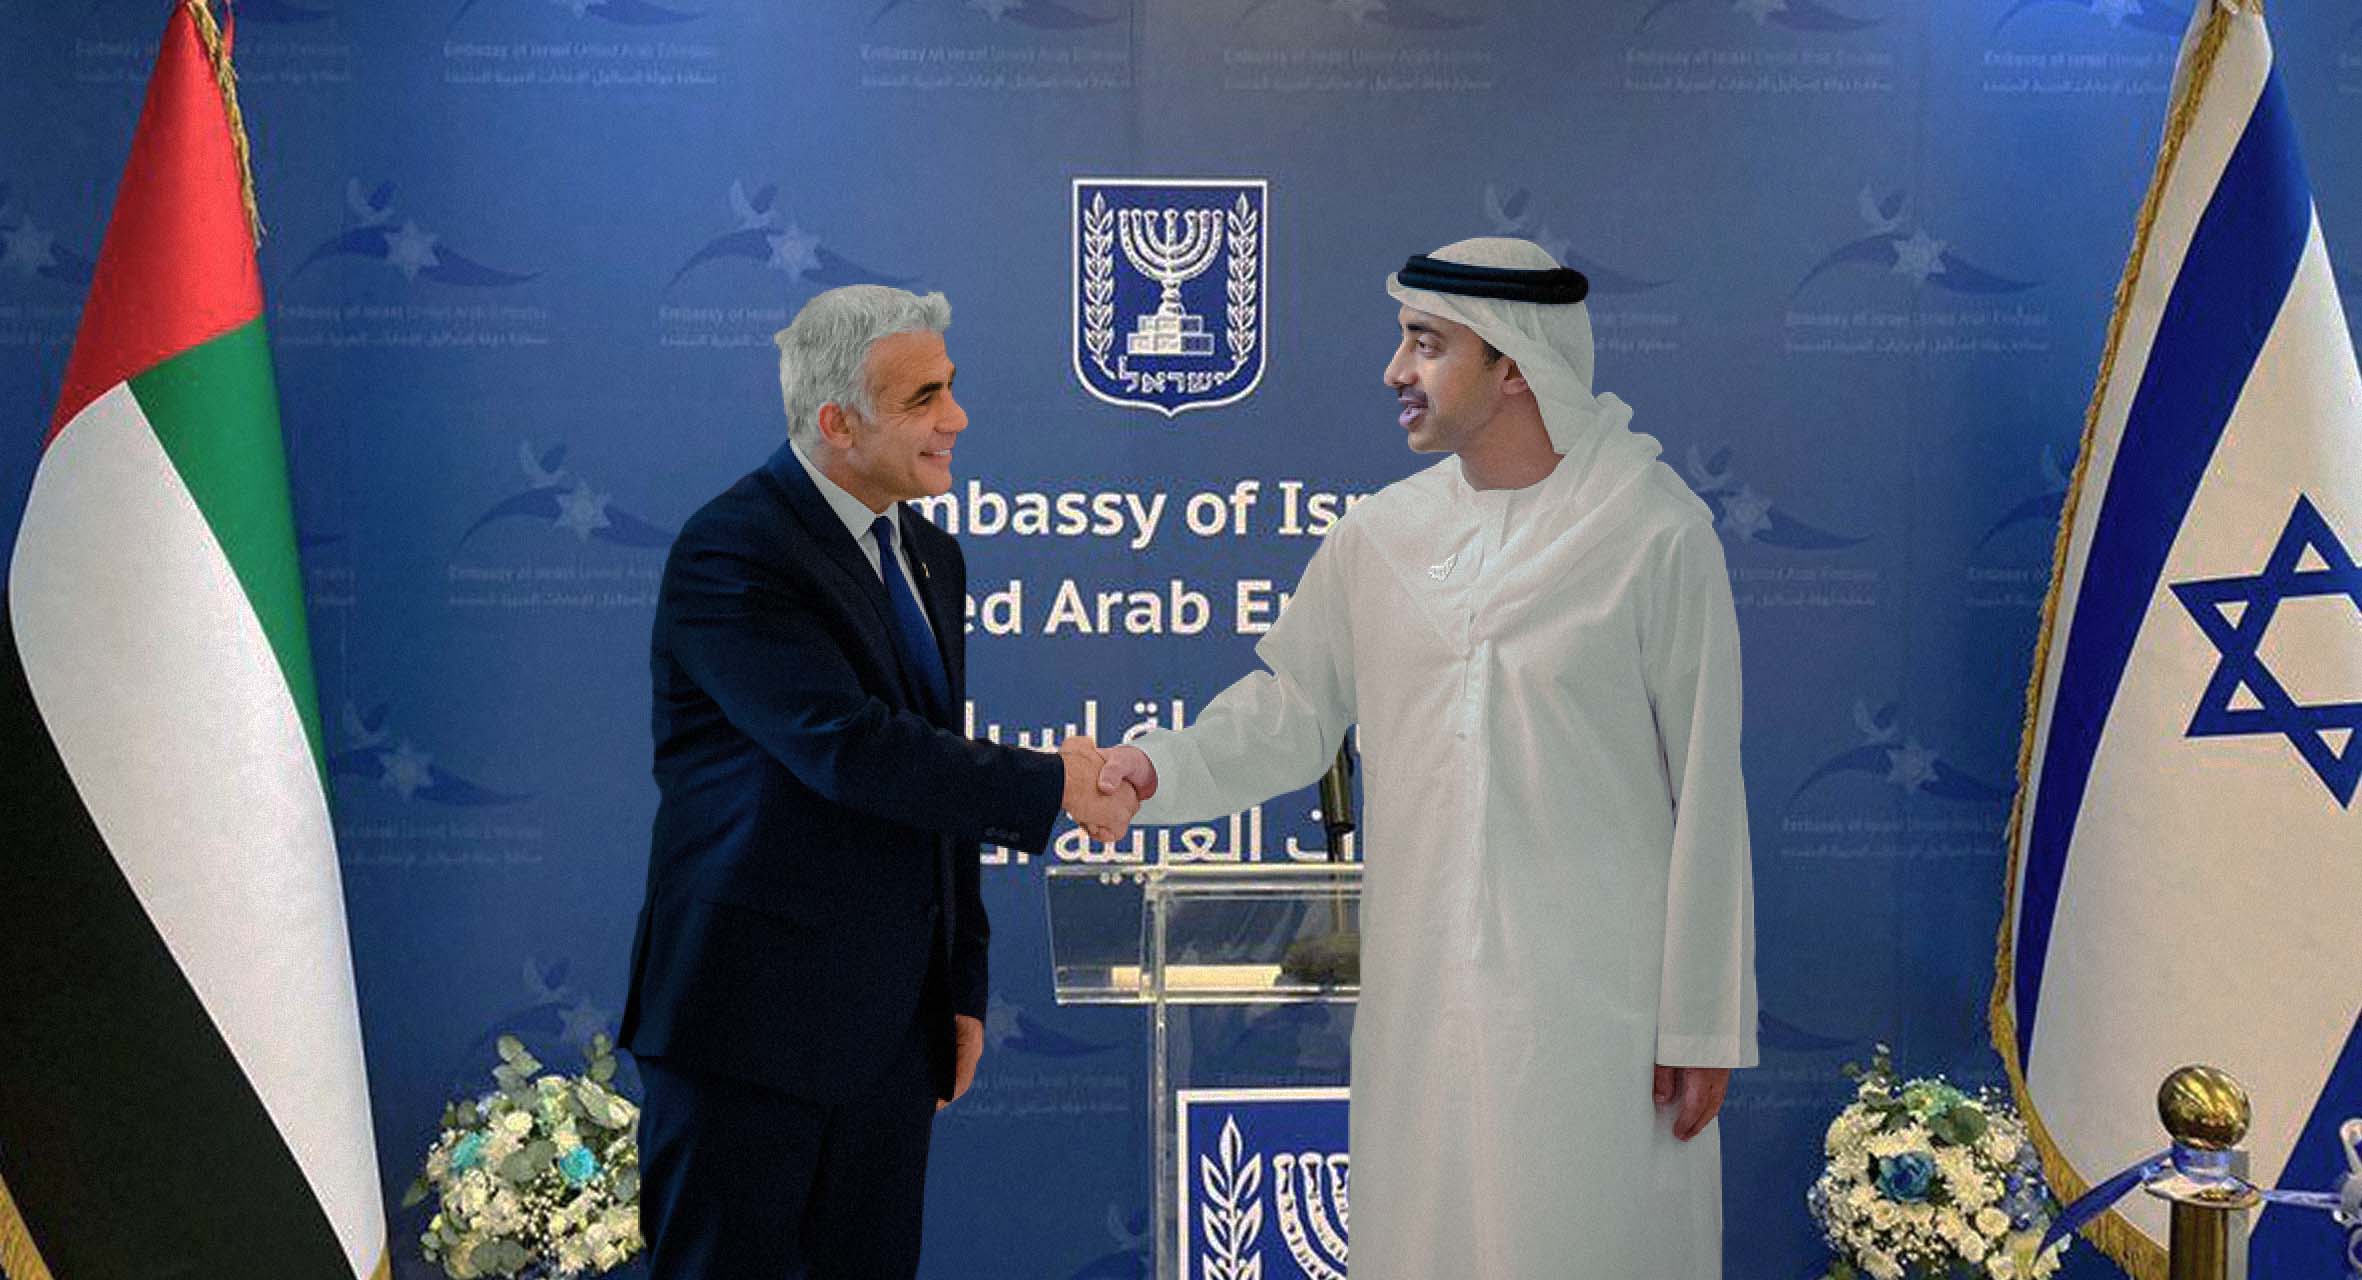 صورة إسرائيل تكلف الإمارات بمهامها كسفارة في العالم العربي